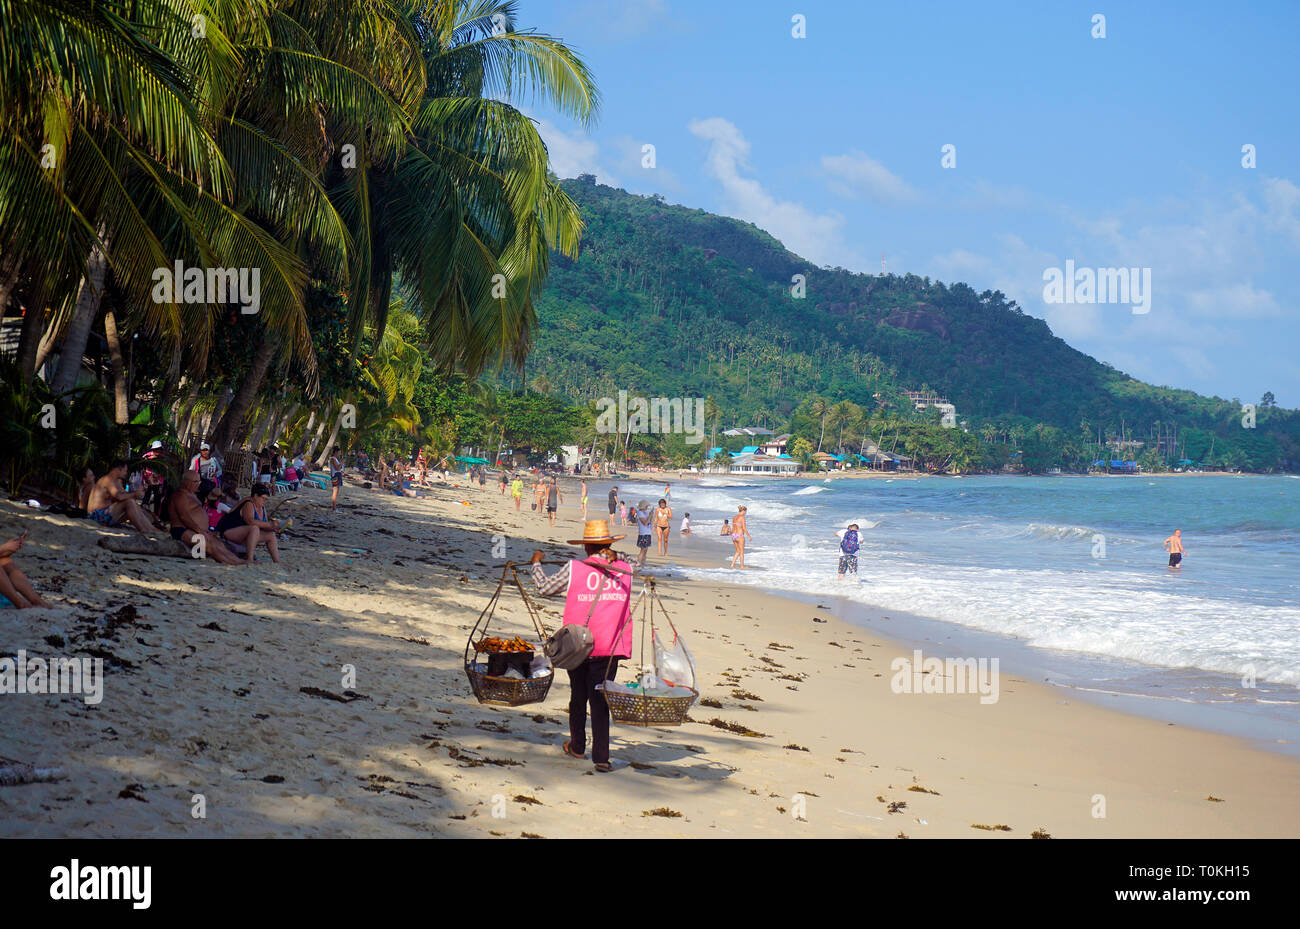 Bin strandverkäuferin Strand Lamai, Koh Samui, Golf von Thailand, Thailand | Strand Anbieter am Lamai Beach, Koh Samui, Golf von Thailand, Thailand Stockfoto